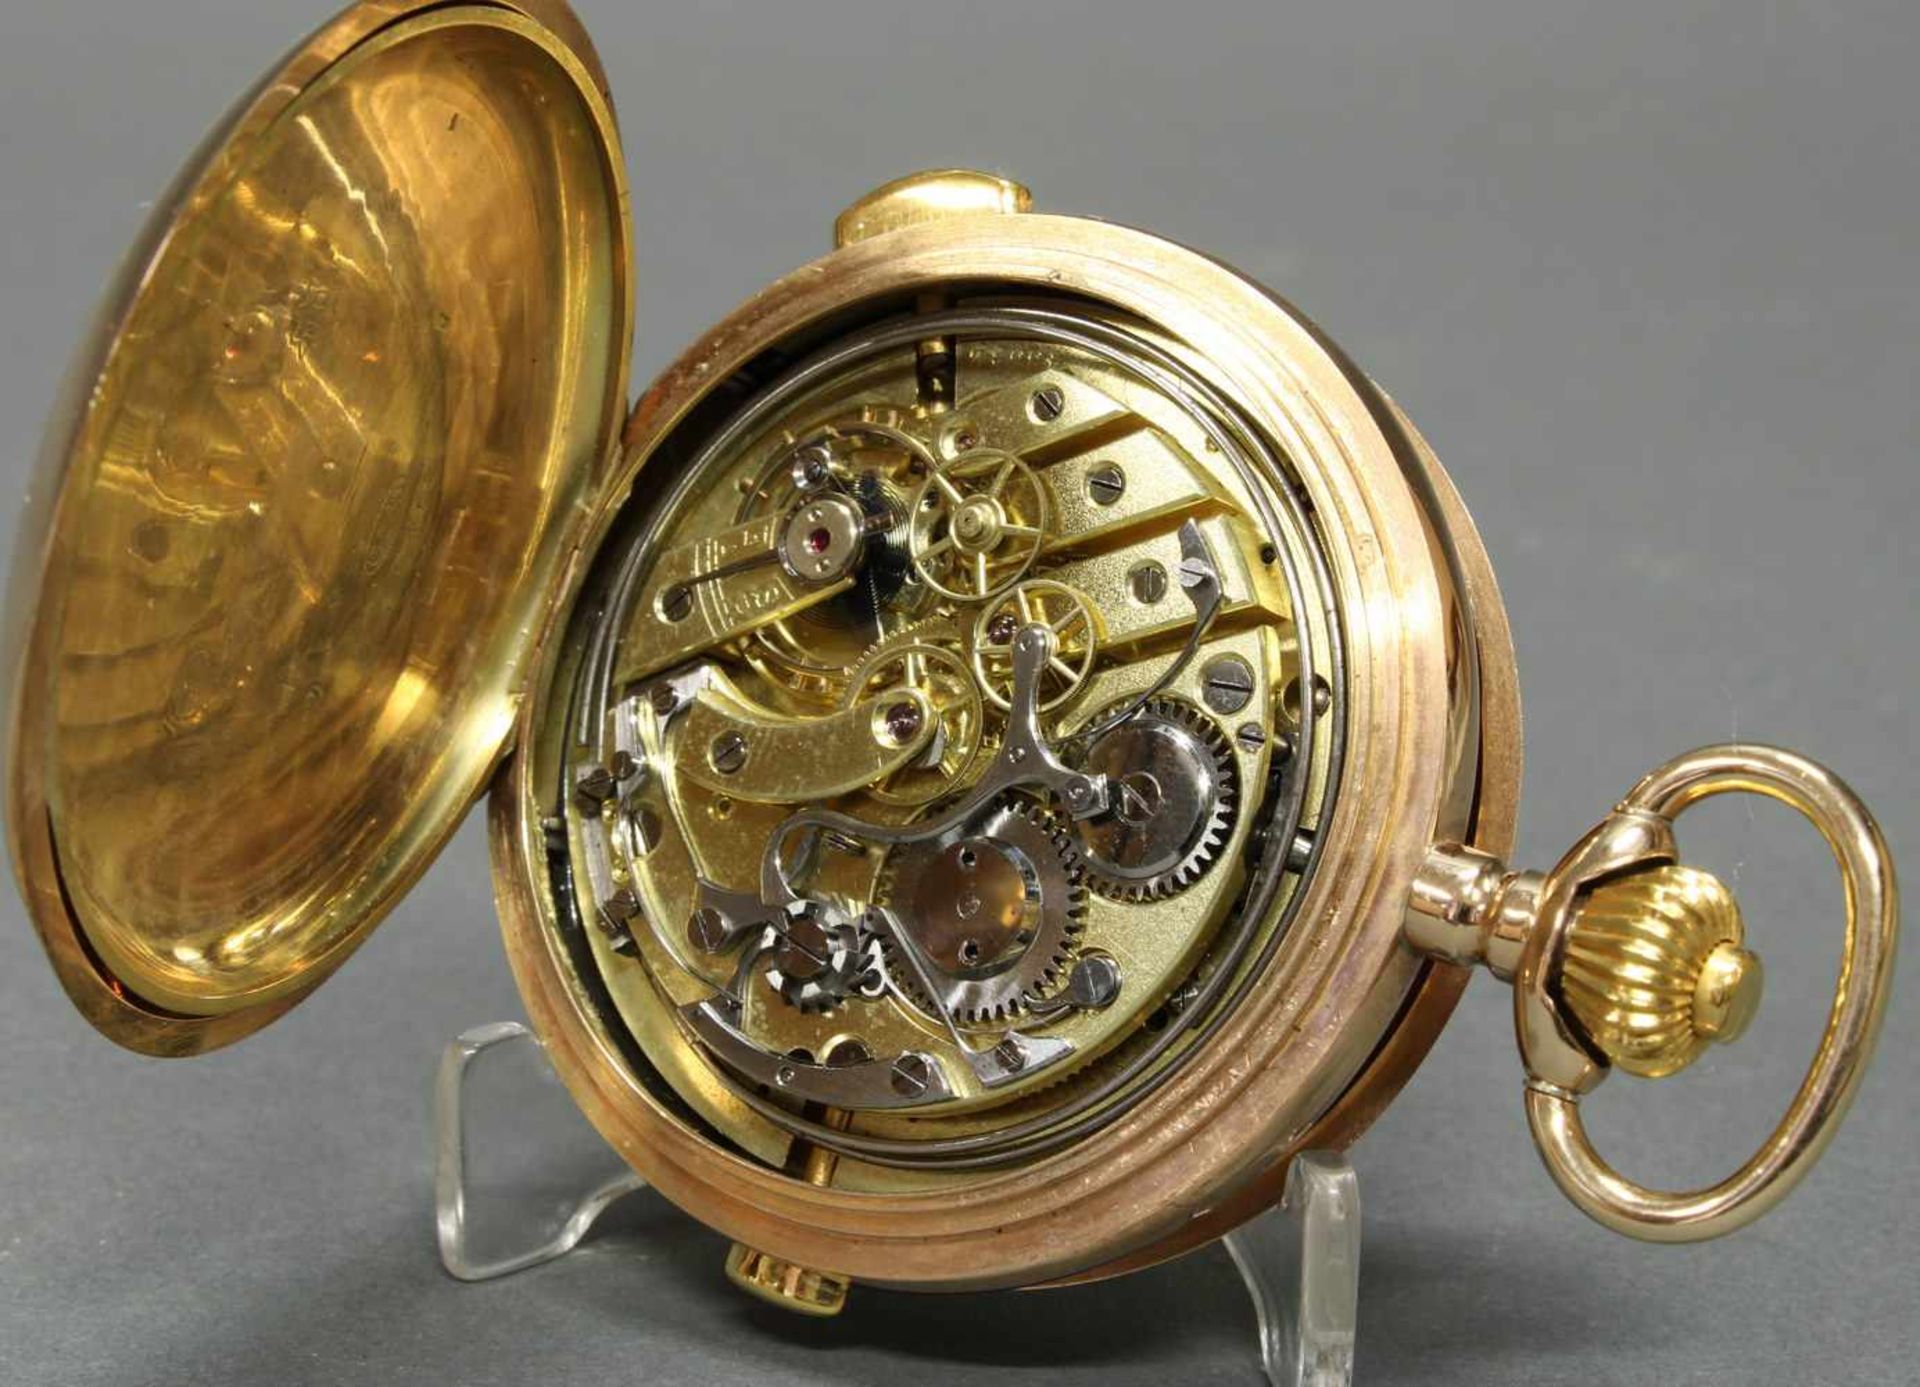 Herrentaschenuhr, Savonette, um 1900, 1/4-Stunden-Repetition, Chronograph, GG 585, Staubdeckel Gold, - Image 5 of 6